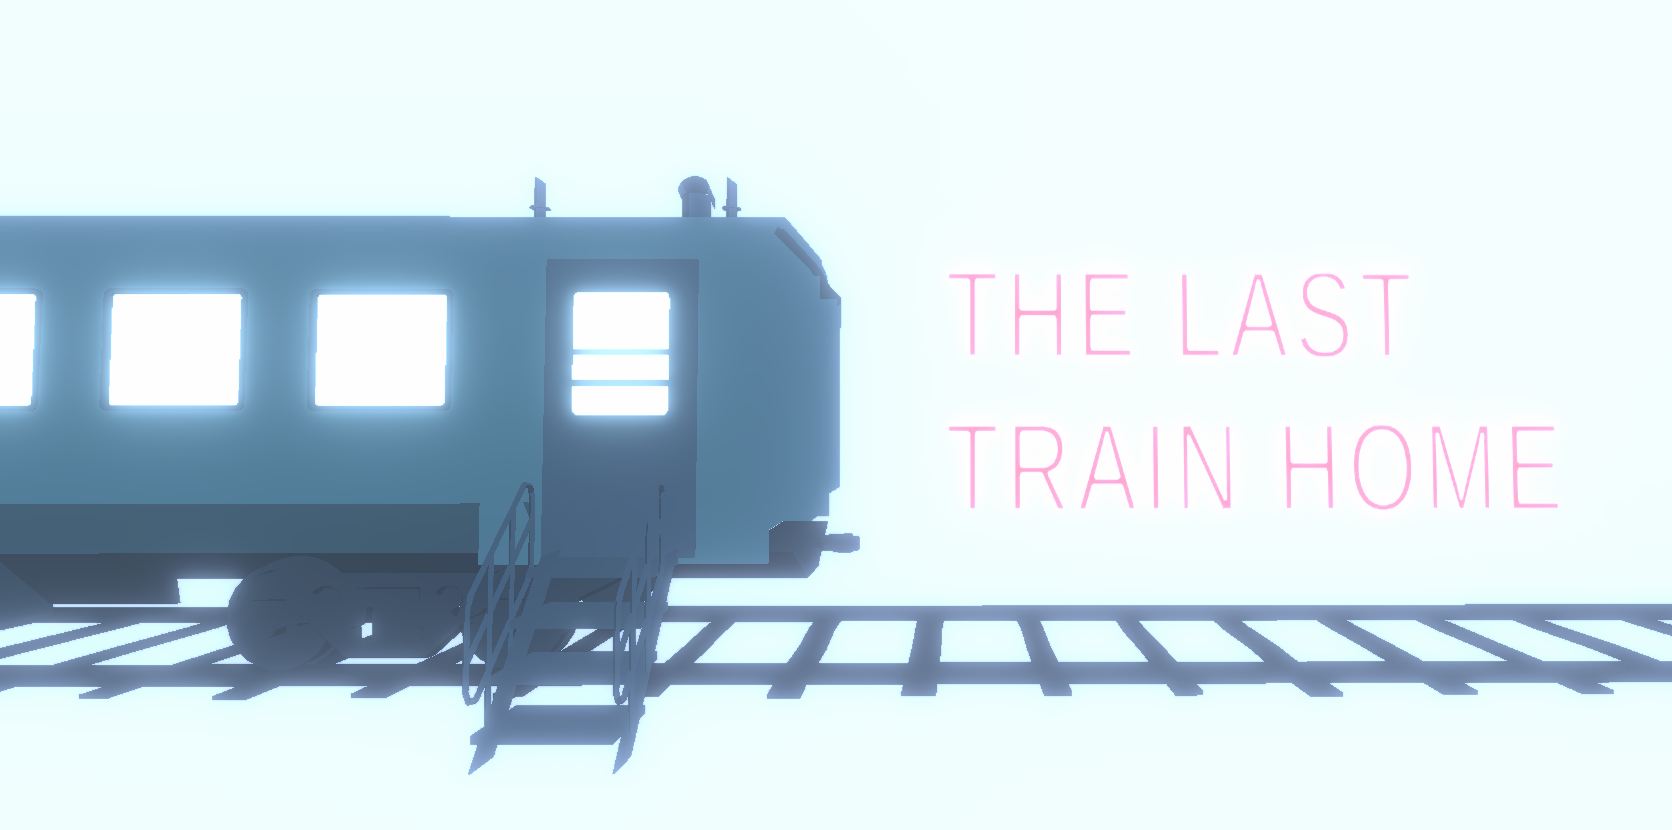 The Last Train Home VR